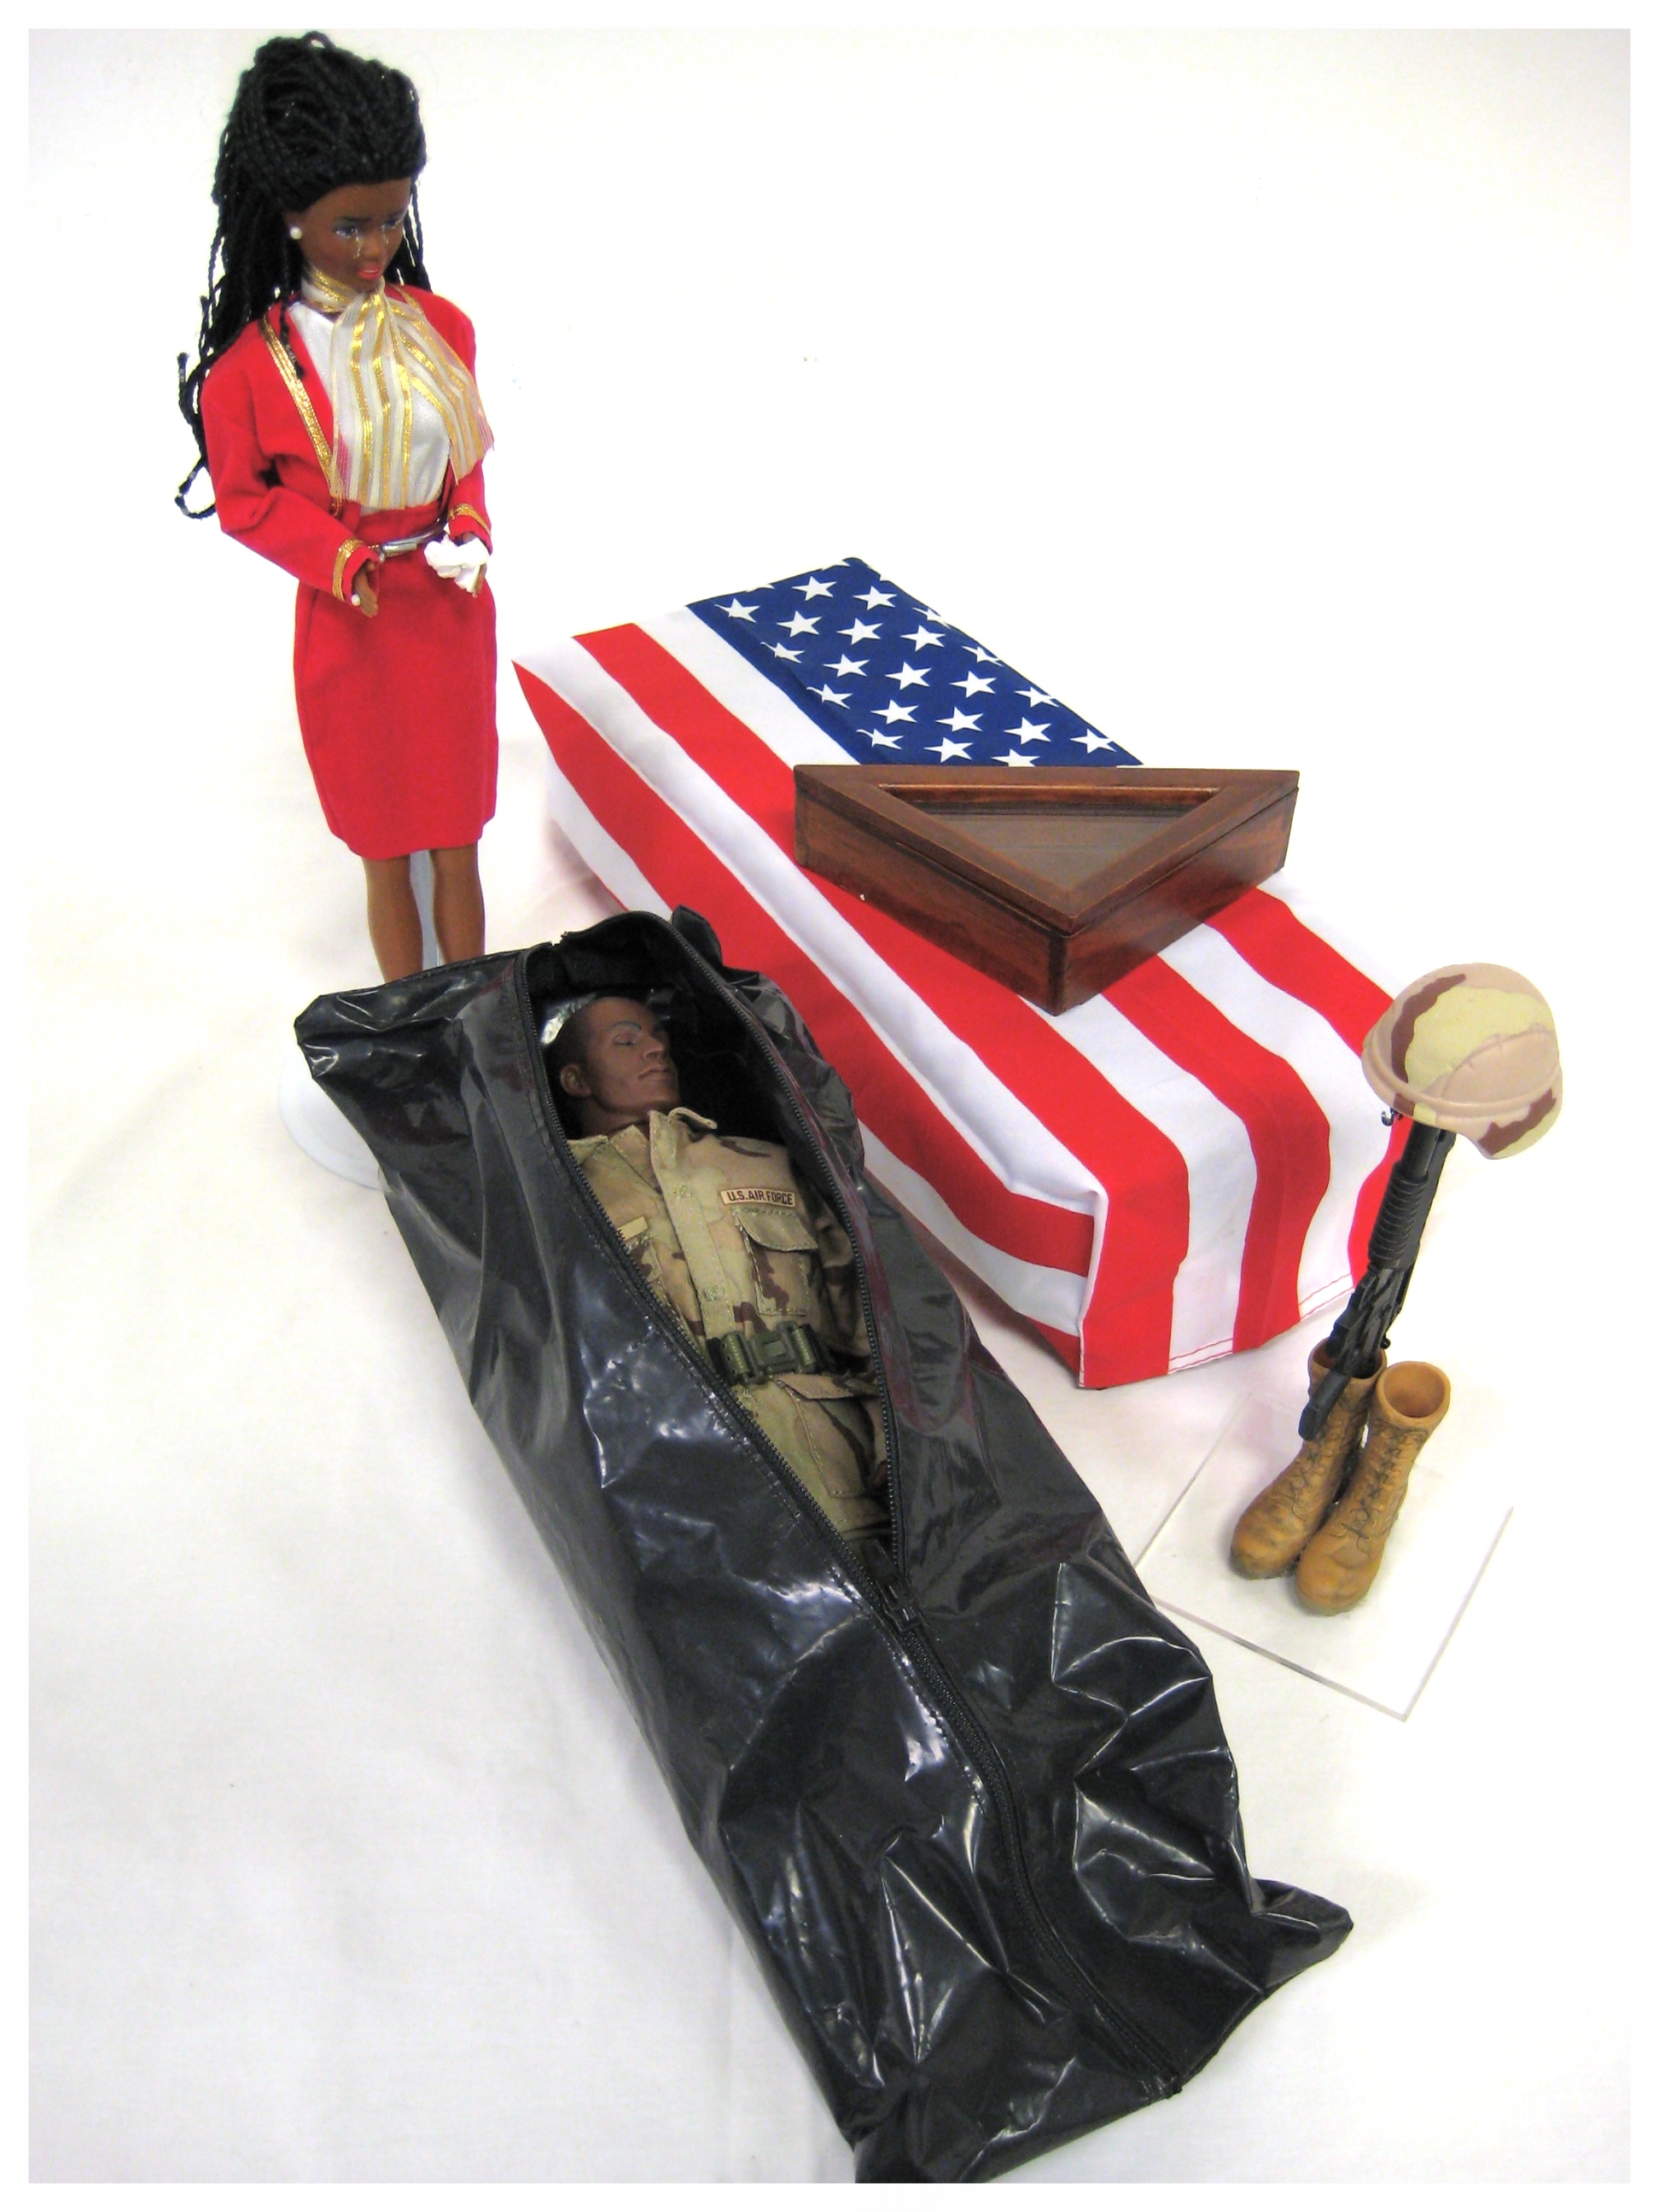 GI Joe reality set with body bag and flag